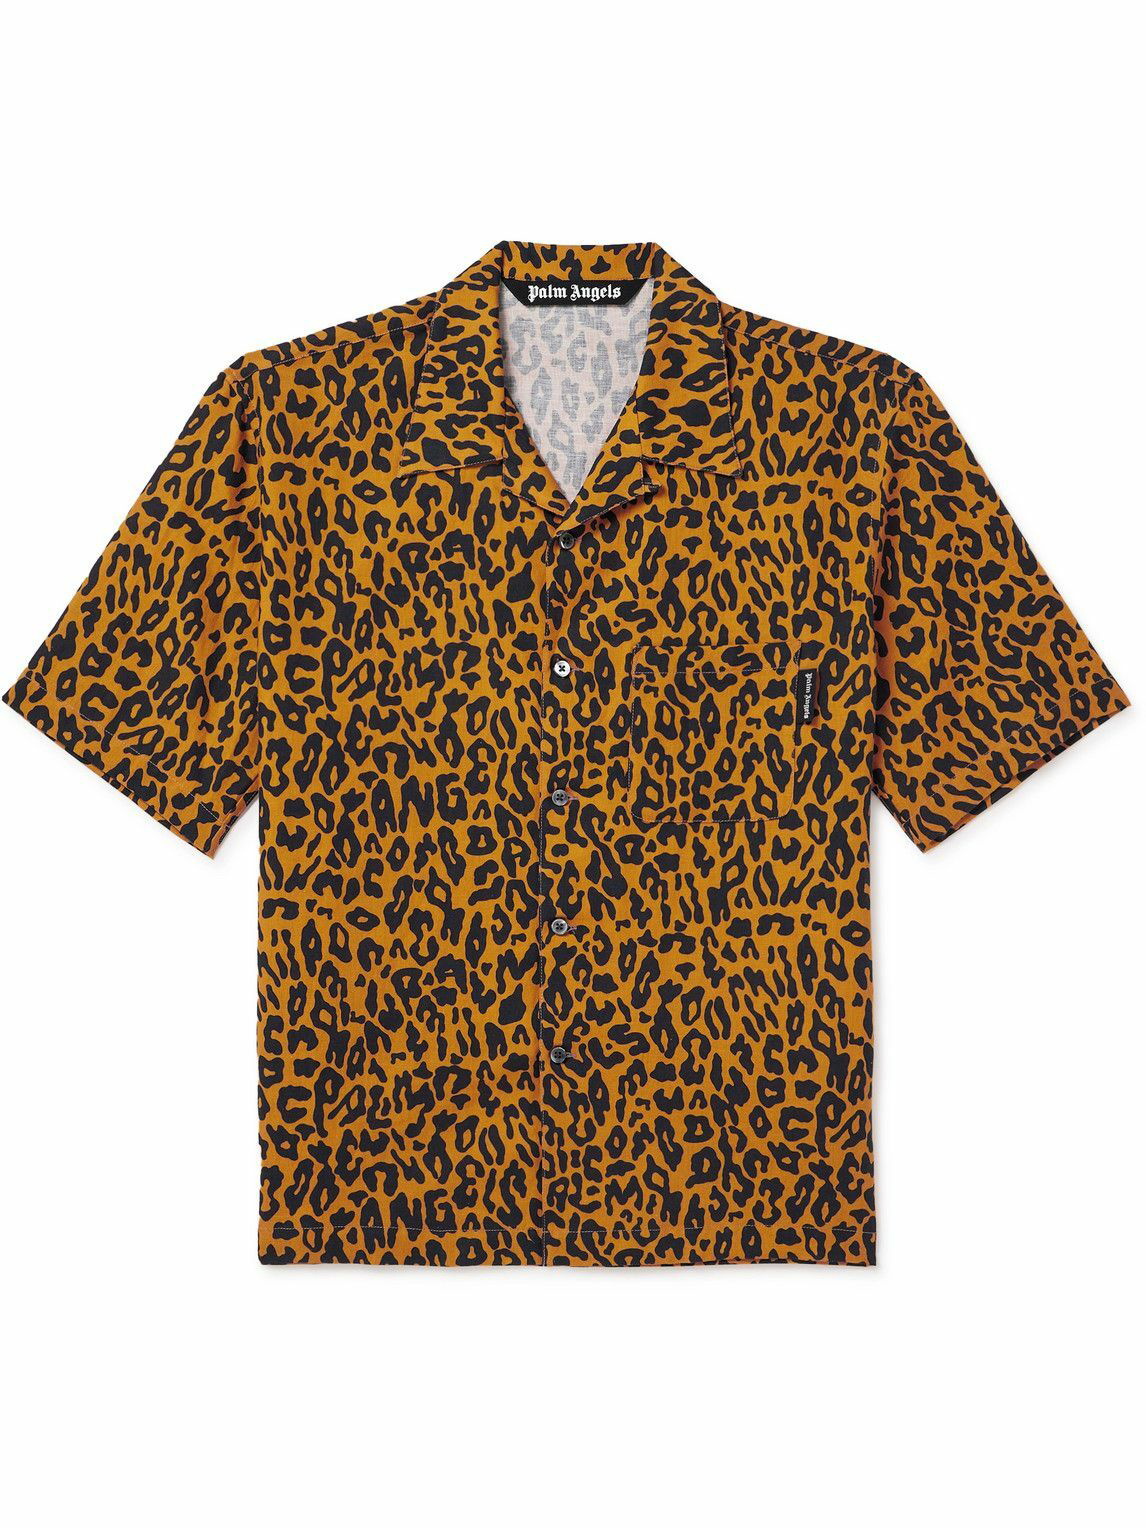 Palm Angels - Camp-Collar Cheetah-Print Linen and Cotton-Blend Shirt ...